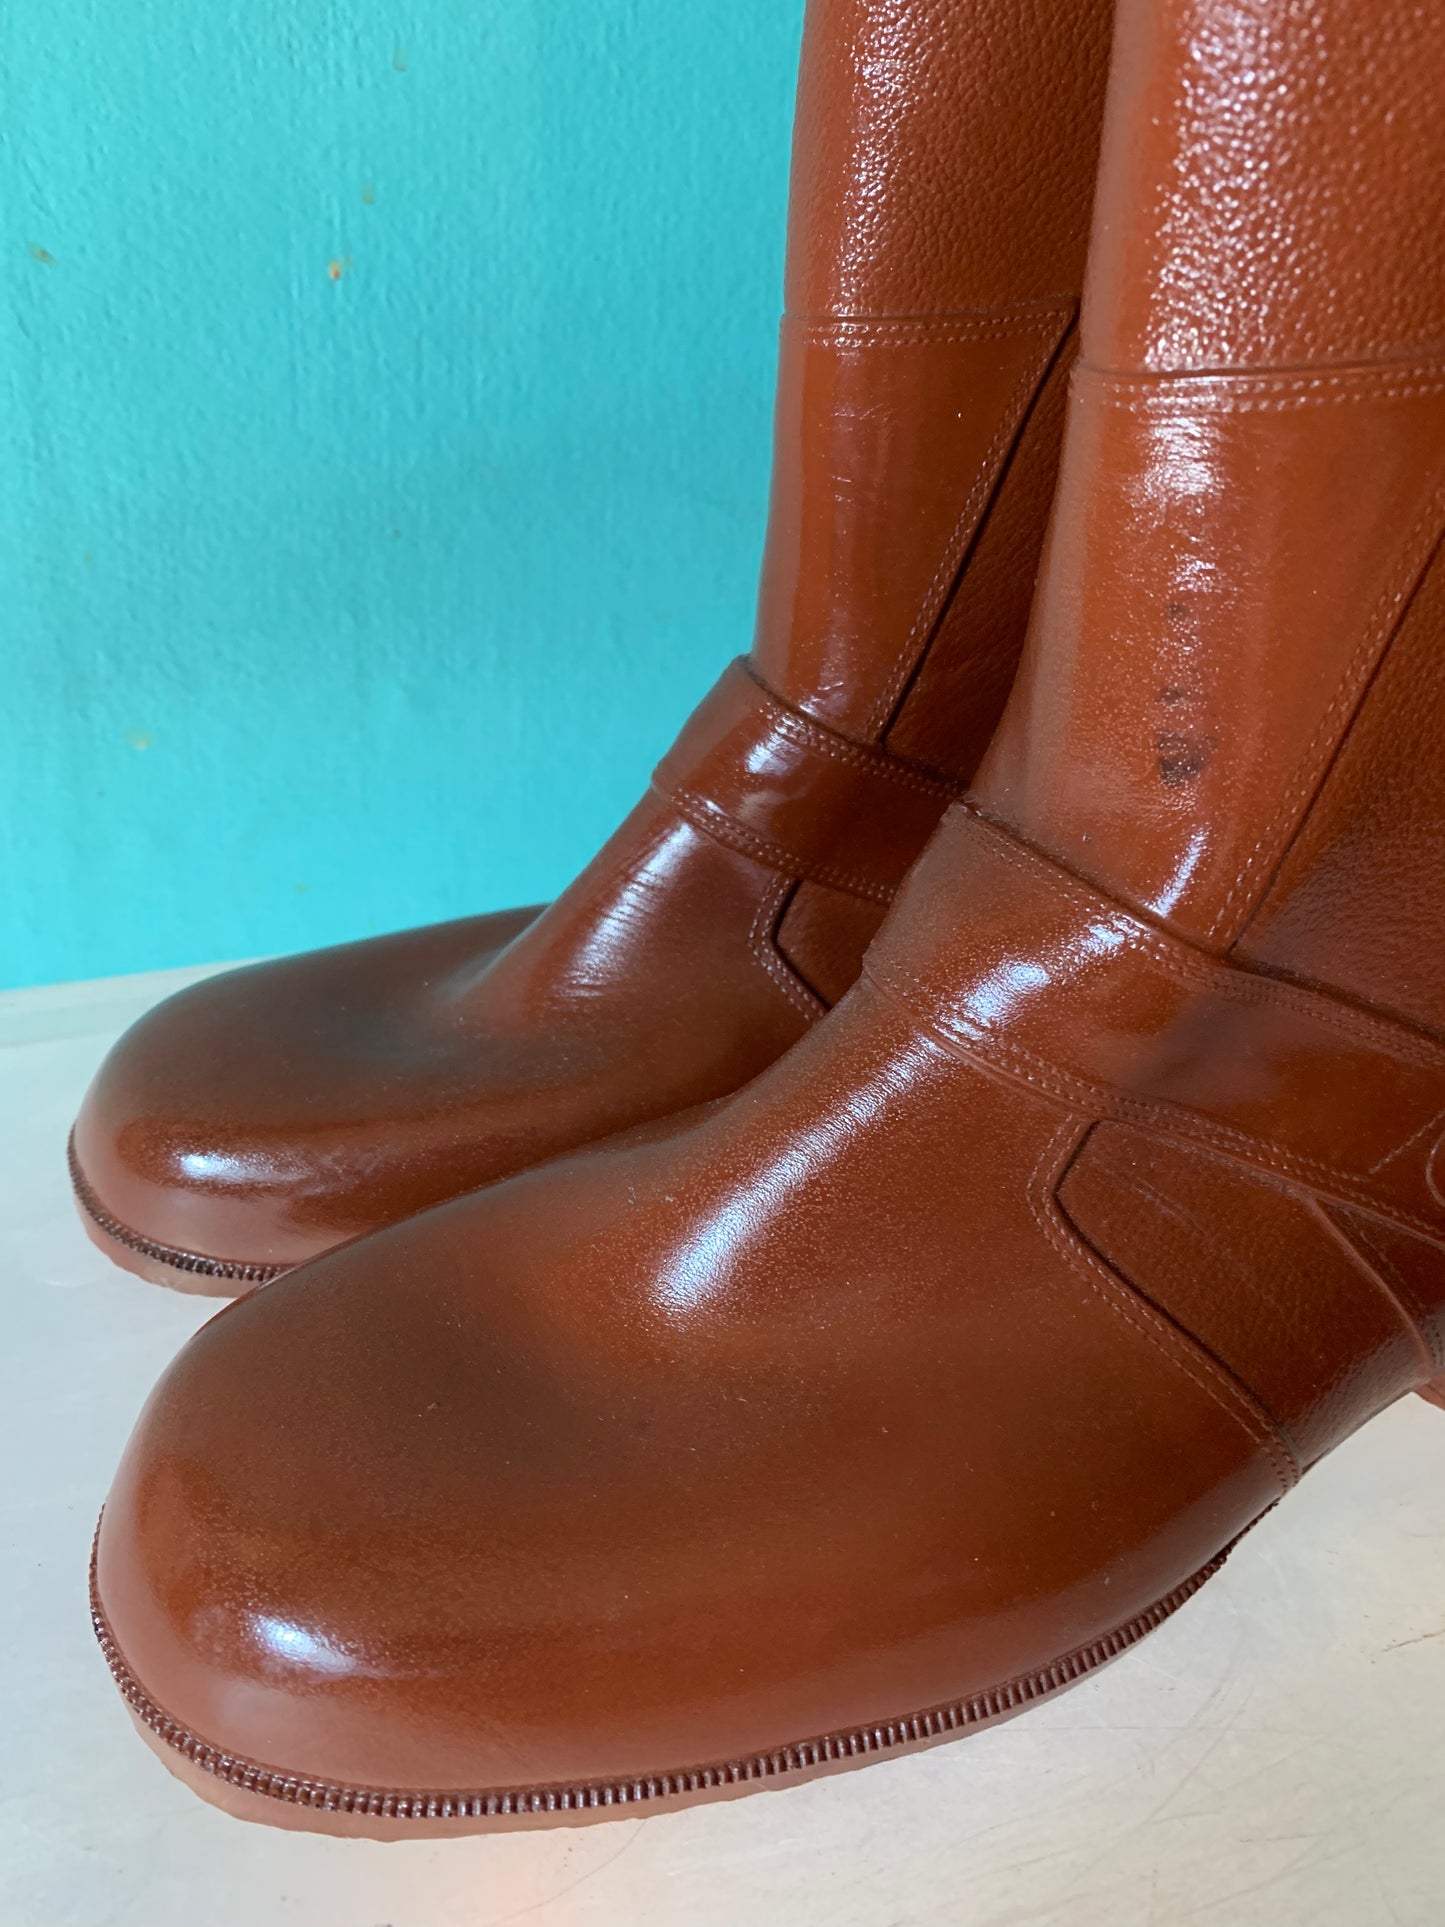 Glossy Cinnamon Brown Rubber Rain Boots circa 1970s US 6